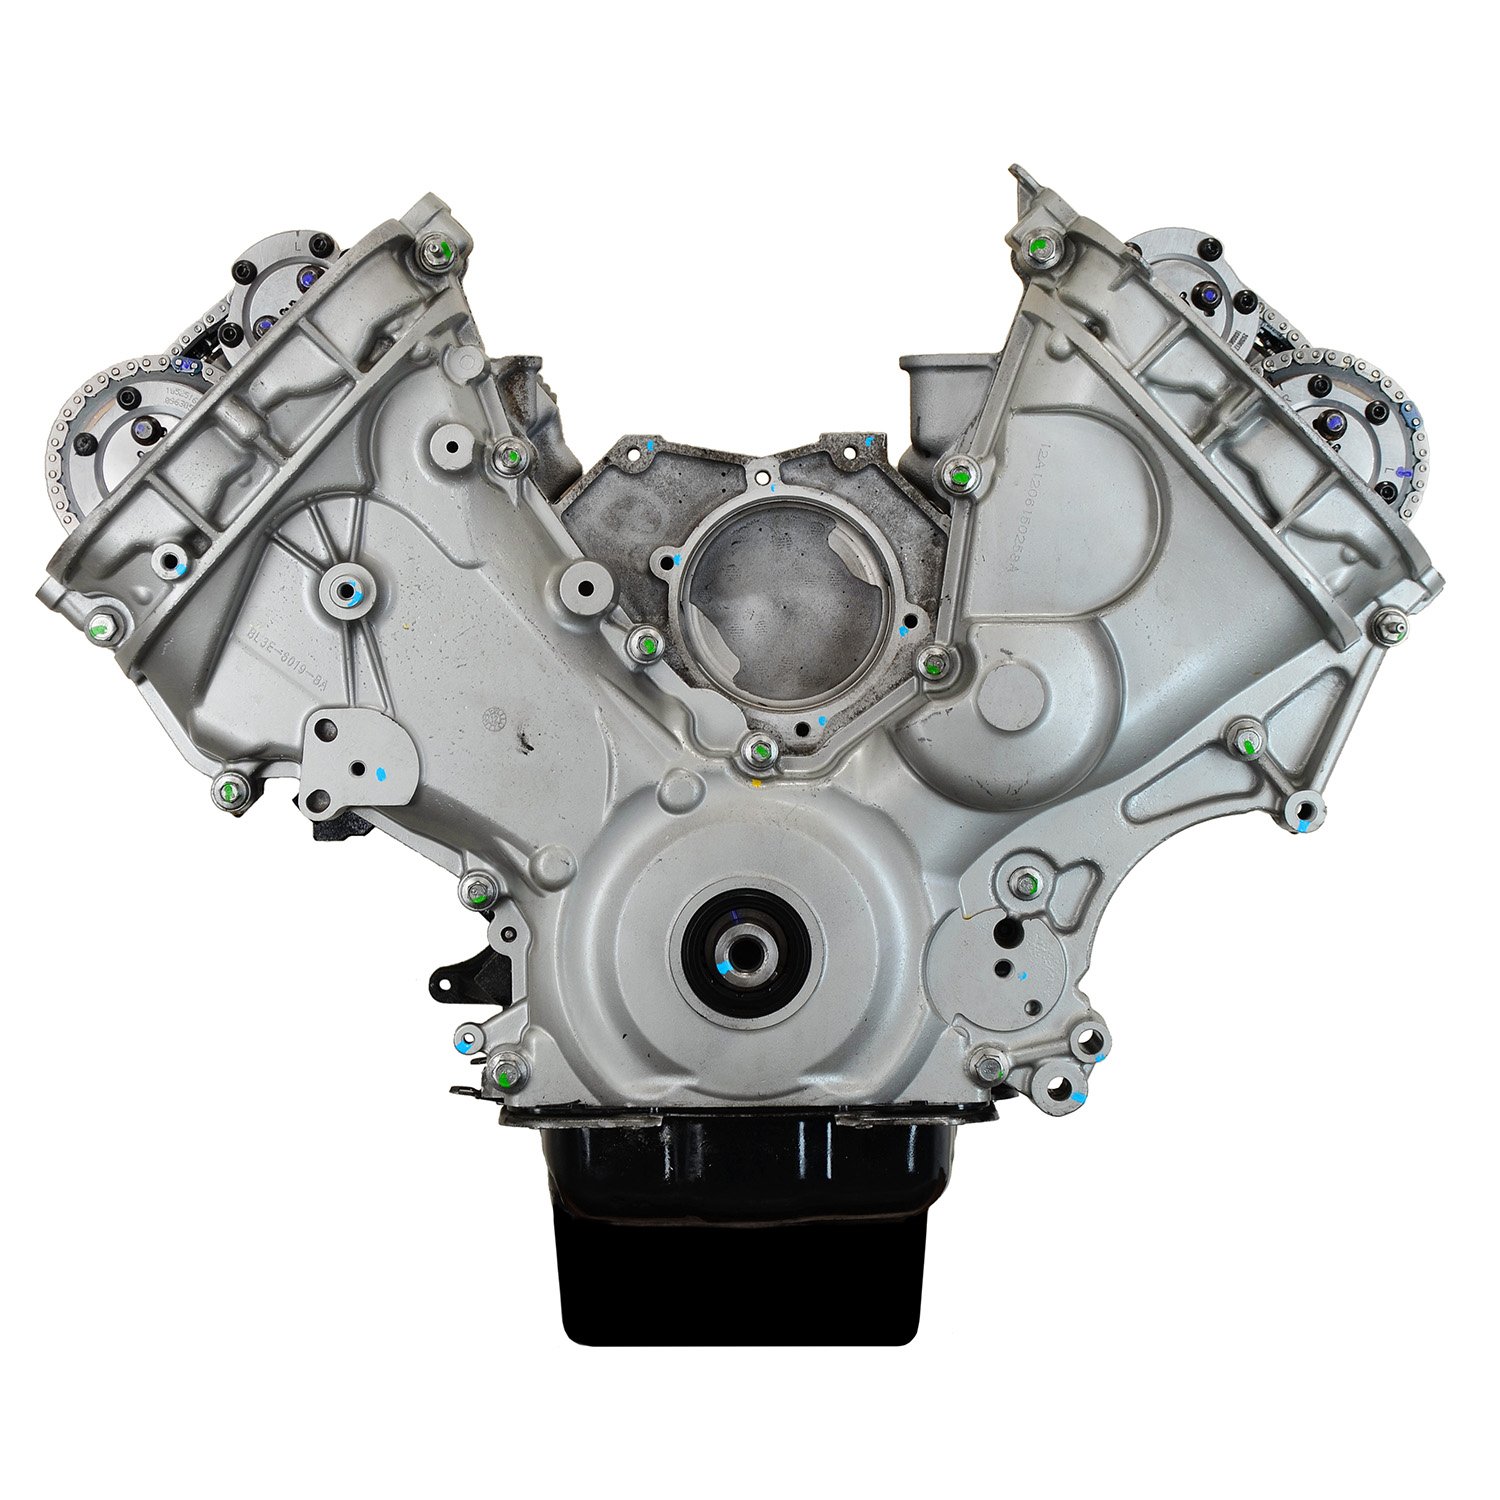 DFFG Remanufactured Crate Engine for 2011-2014 Ford F-150 V8 5.0L